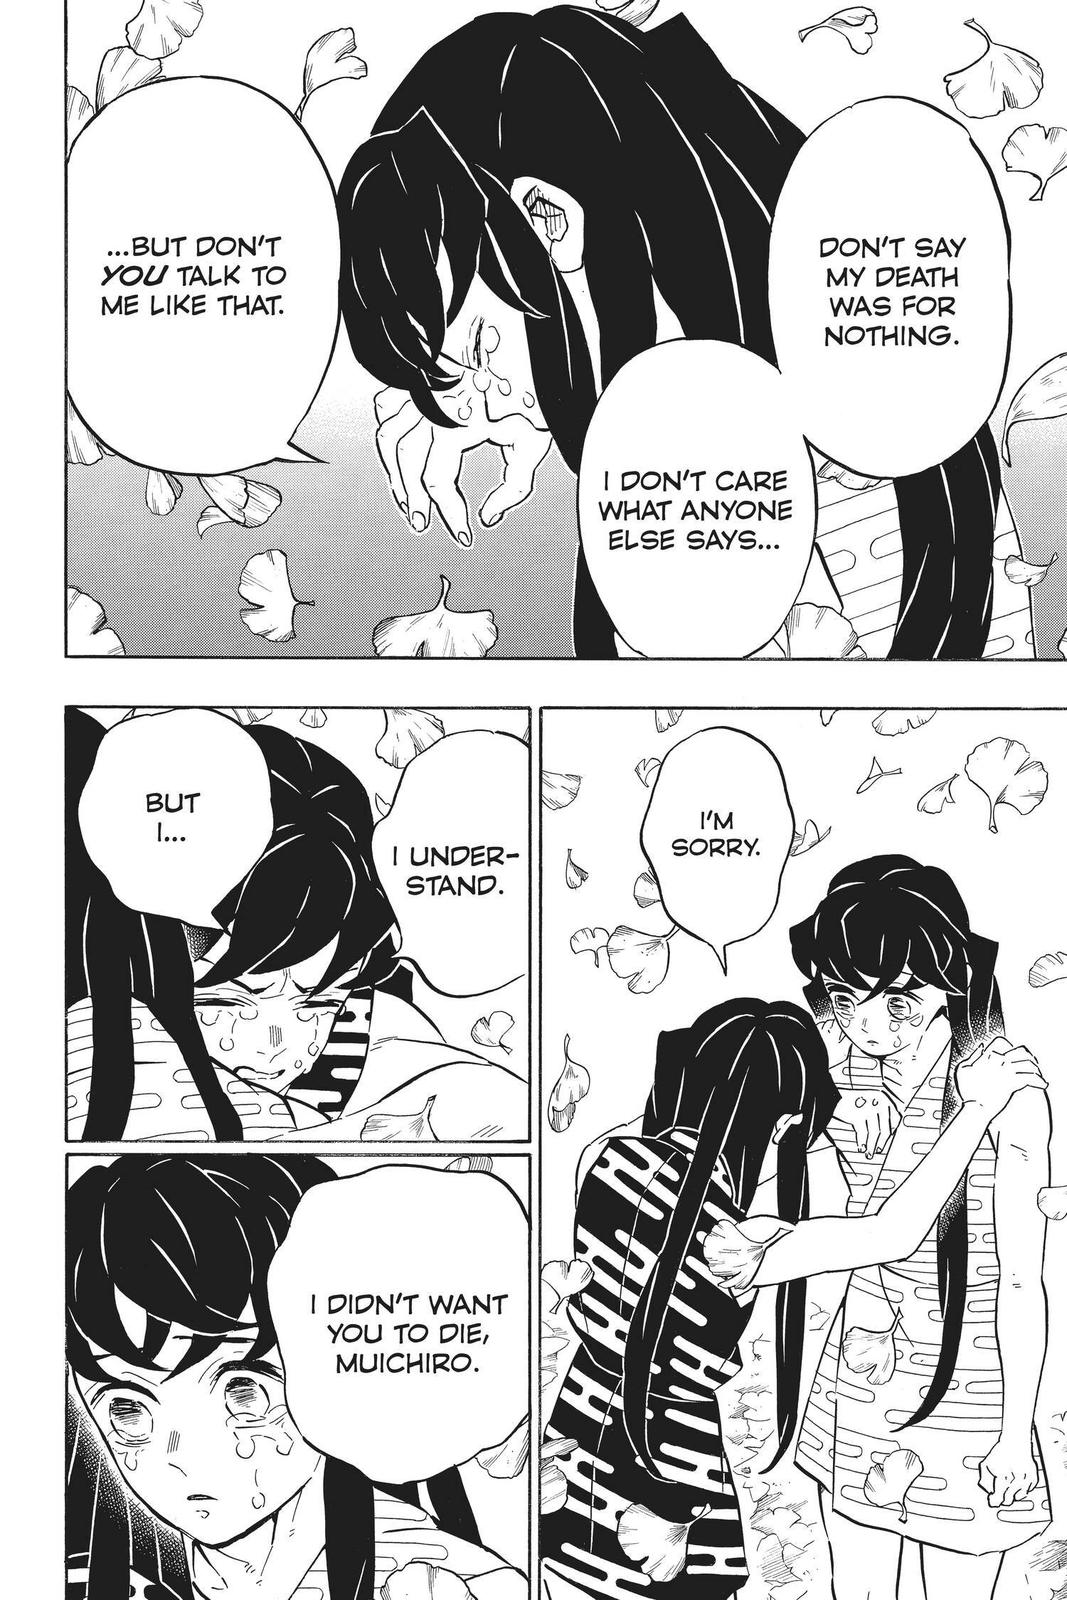 Demon Slayer Manga Manga Chapter - 179 - image 7